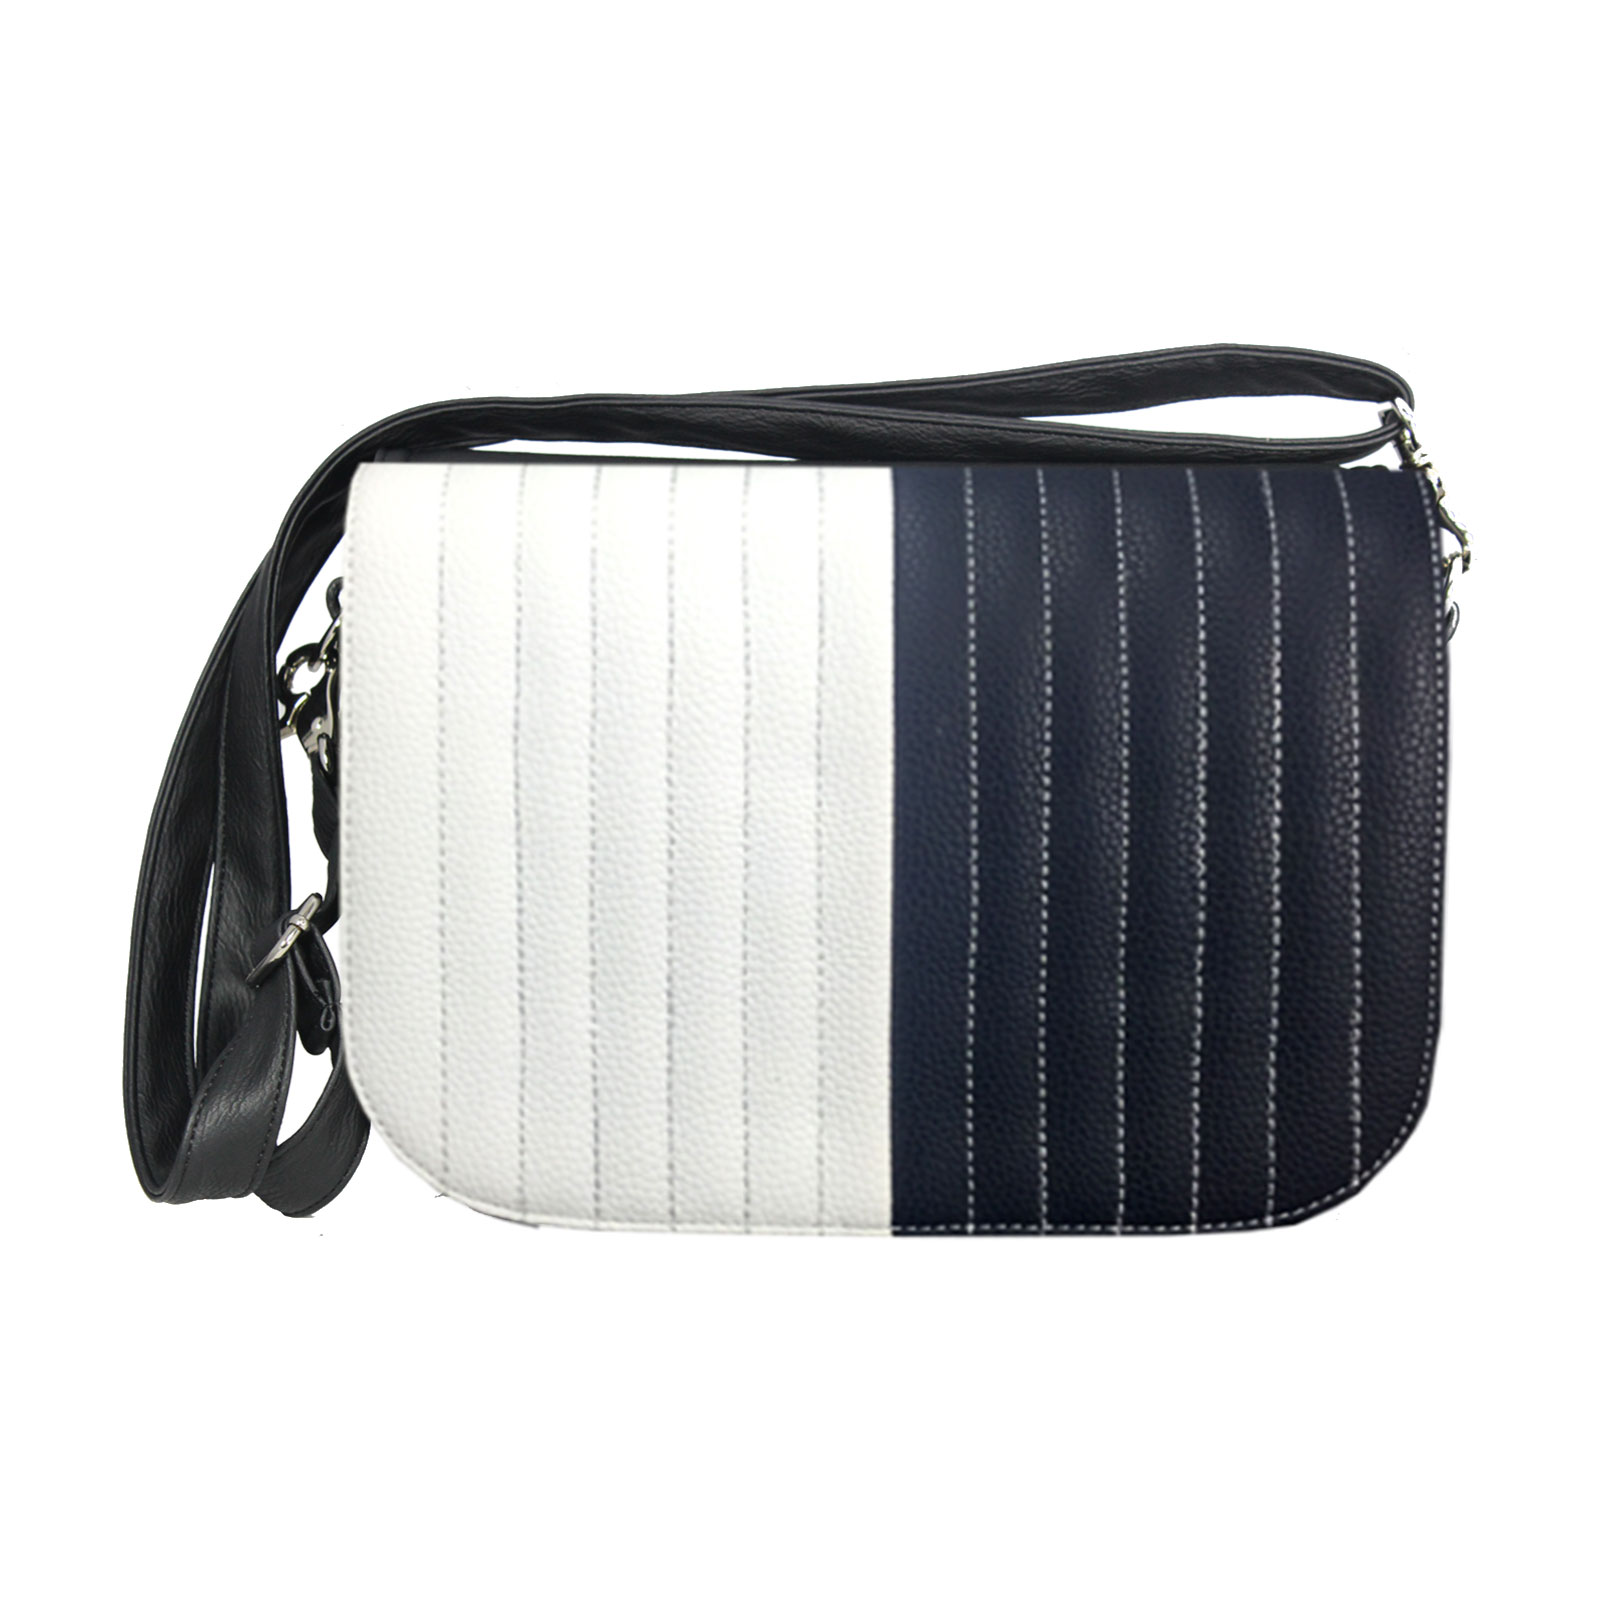 Handtasche mit dunkelblauen und weißen Design  Delieta soft Bag